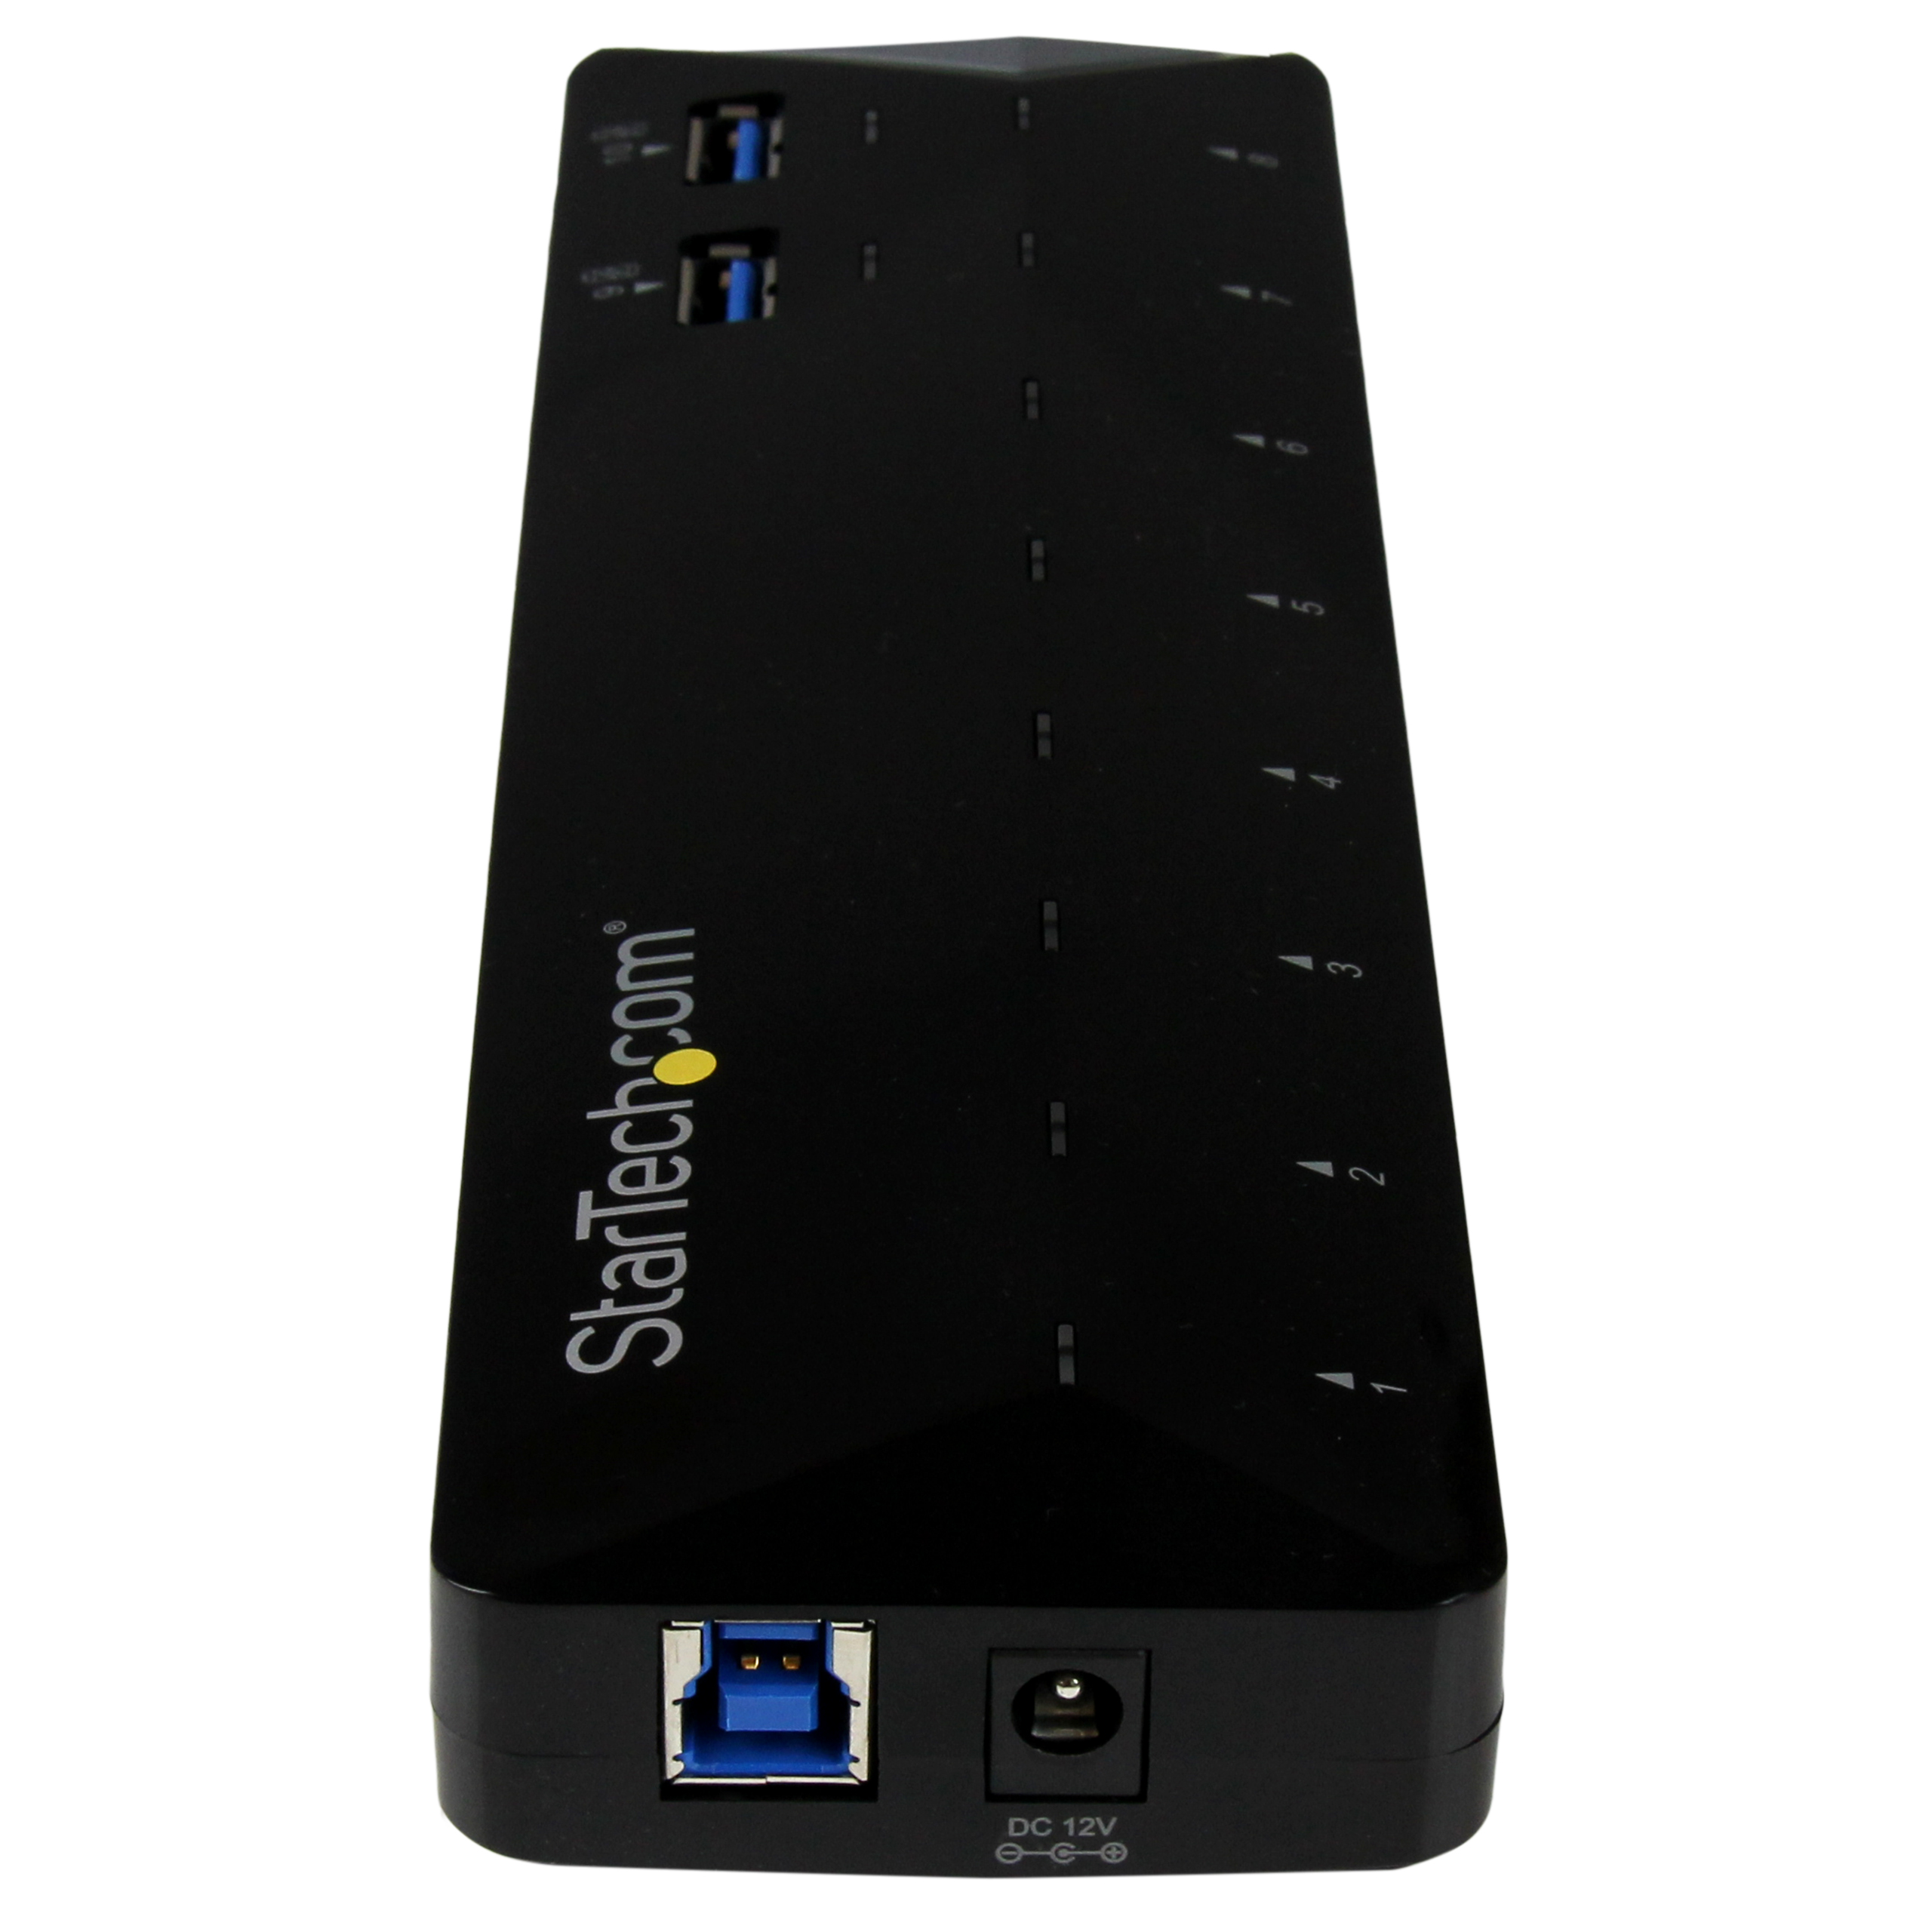 StarTech.com 10 Port USB 3.0 Hub with Charge & Sync Ports - 8 x USB-A, 2 x USB-A Fast Charge Ports - Multi Port Powered USB Hub - image 4 of 4